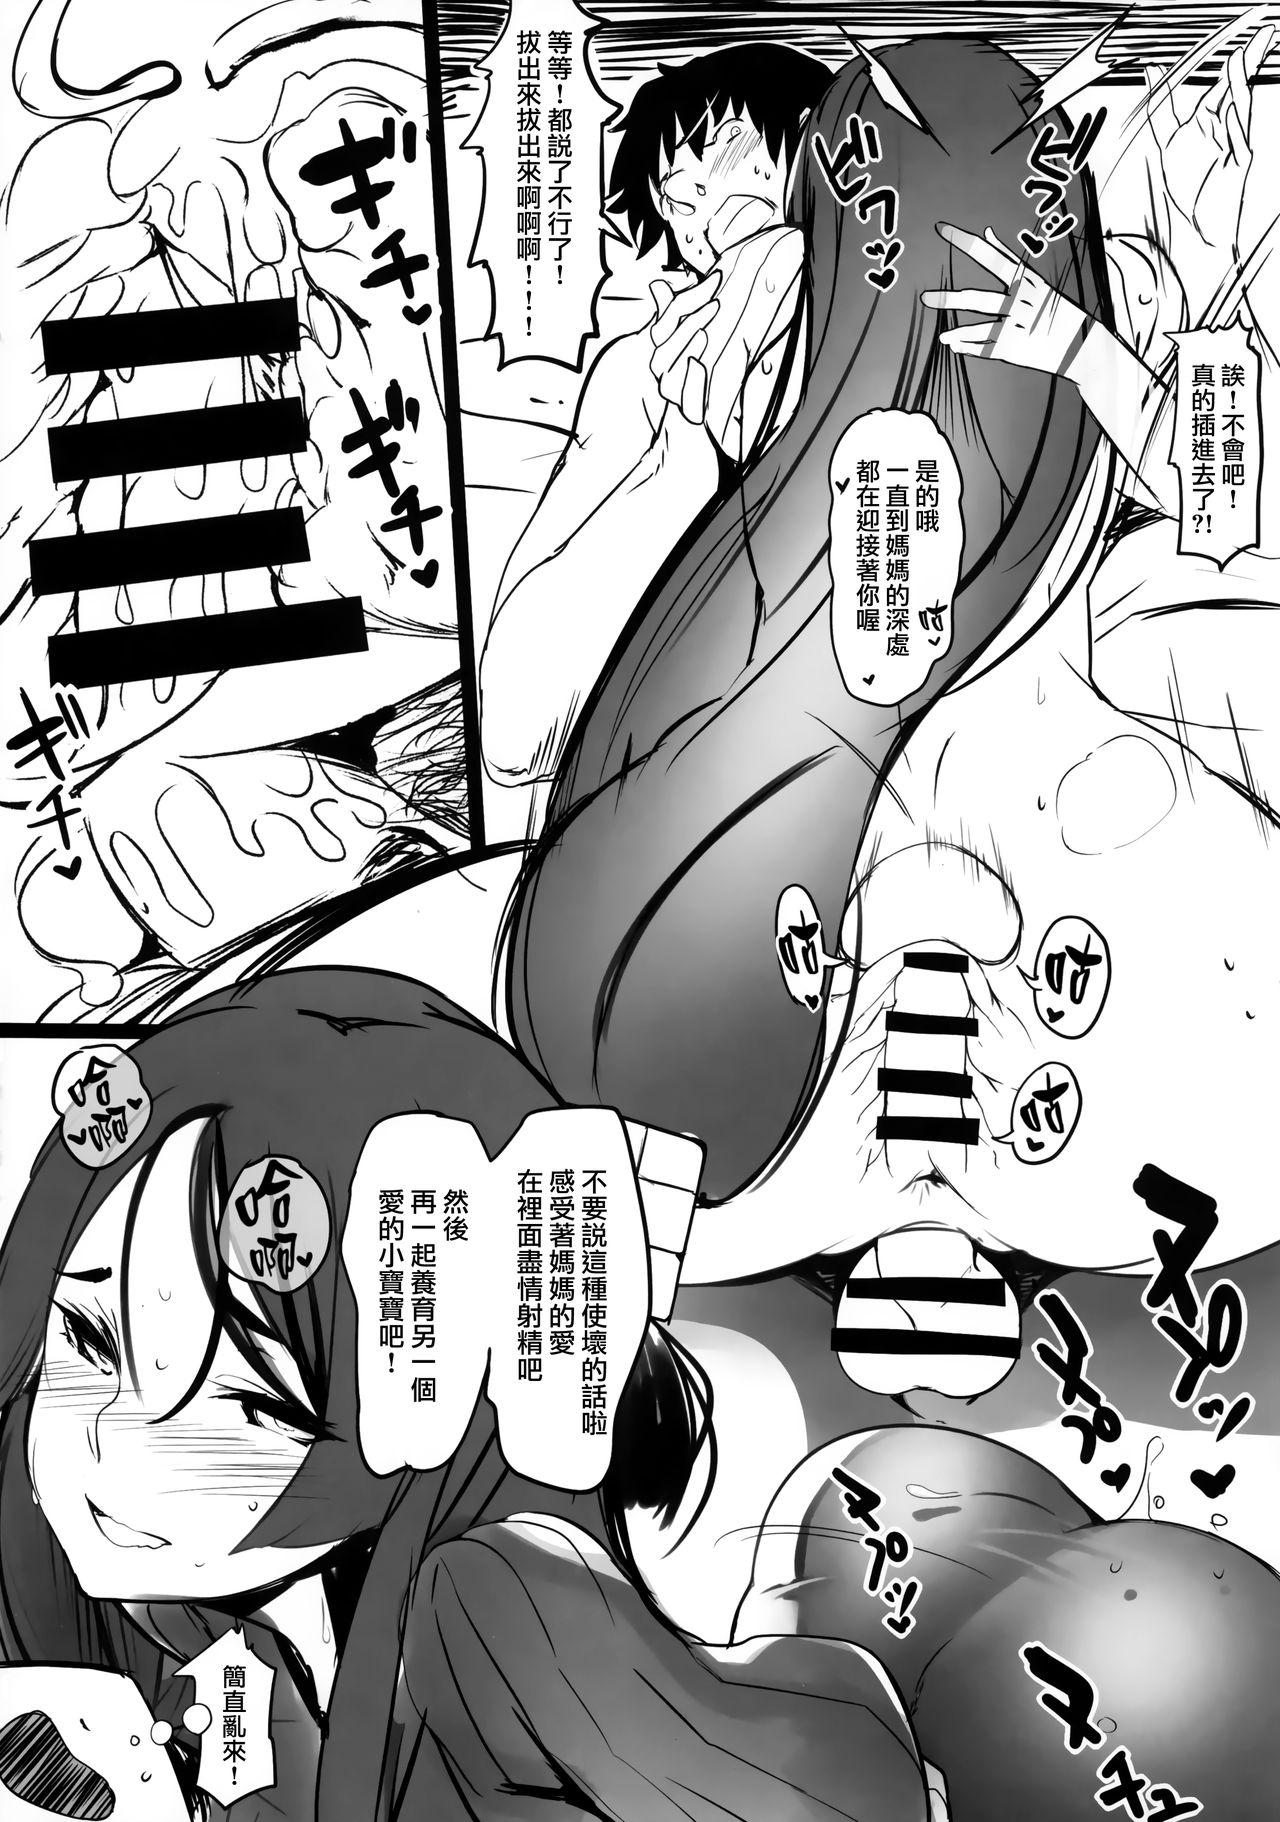 Gayclips Oya no Kokoro Ko Shirazu - Fate grand order Glamcore - Page 6